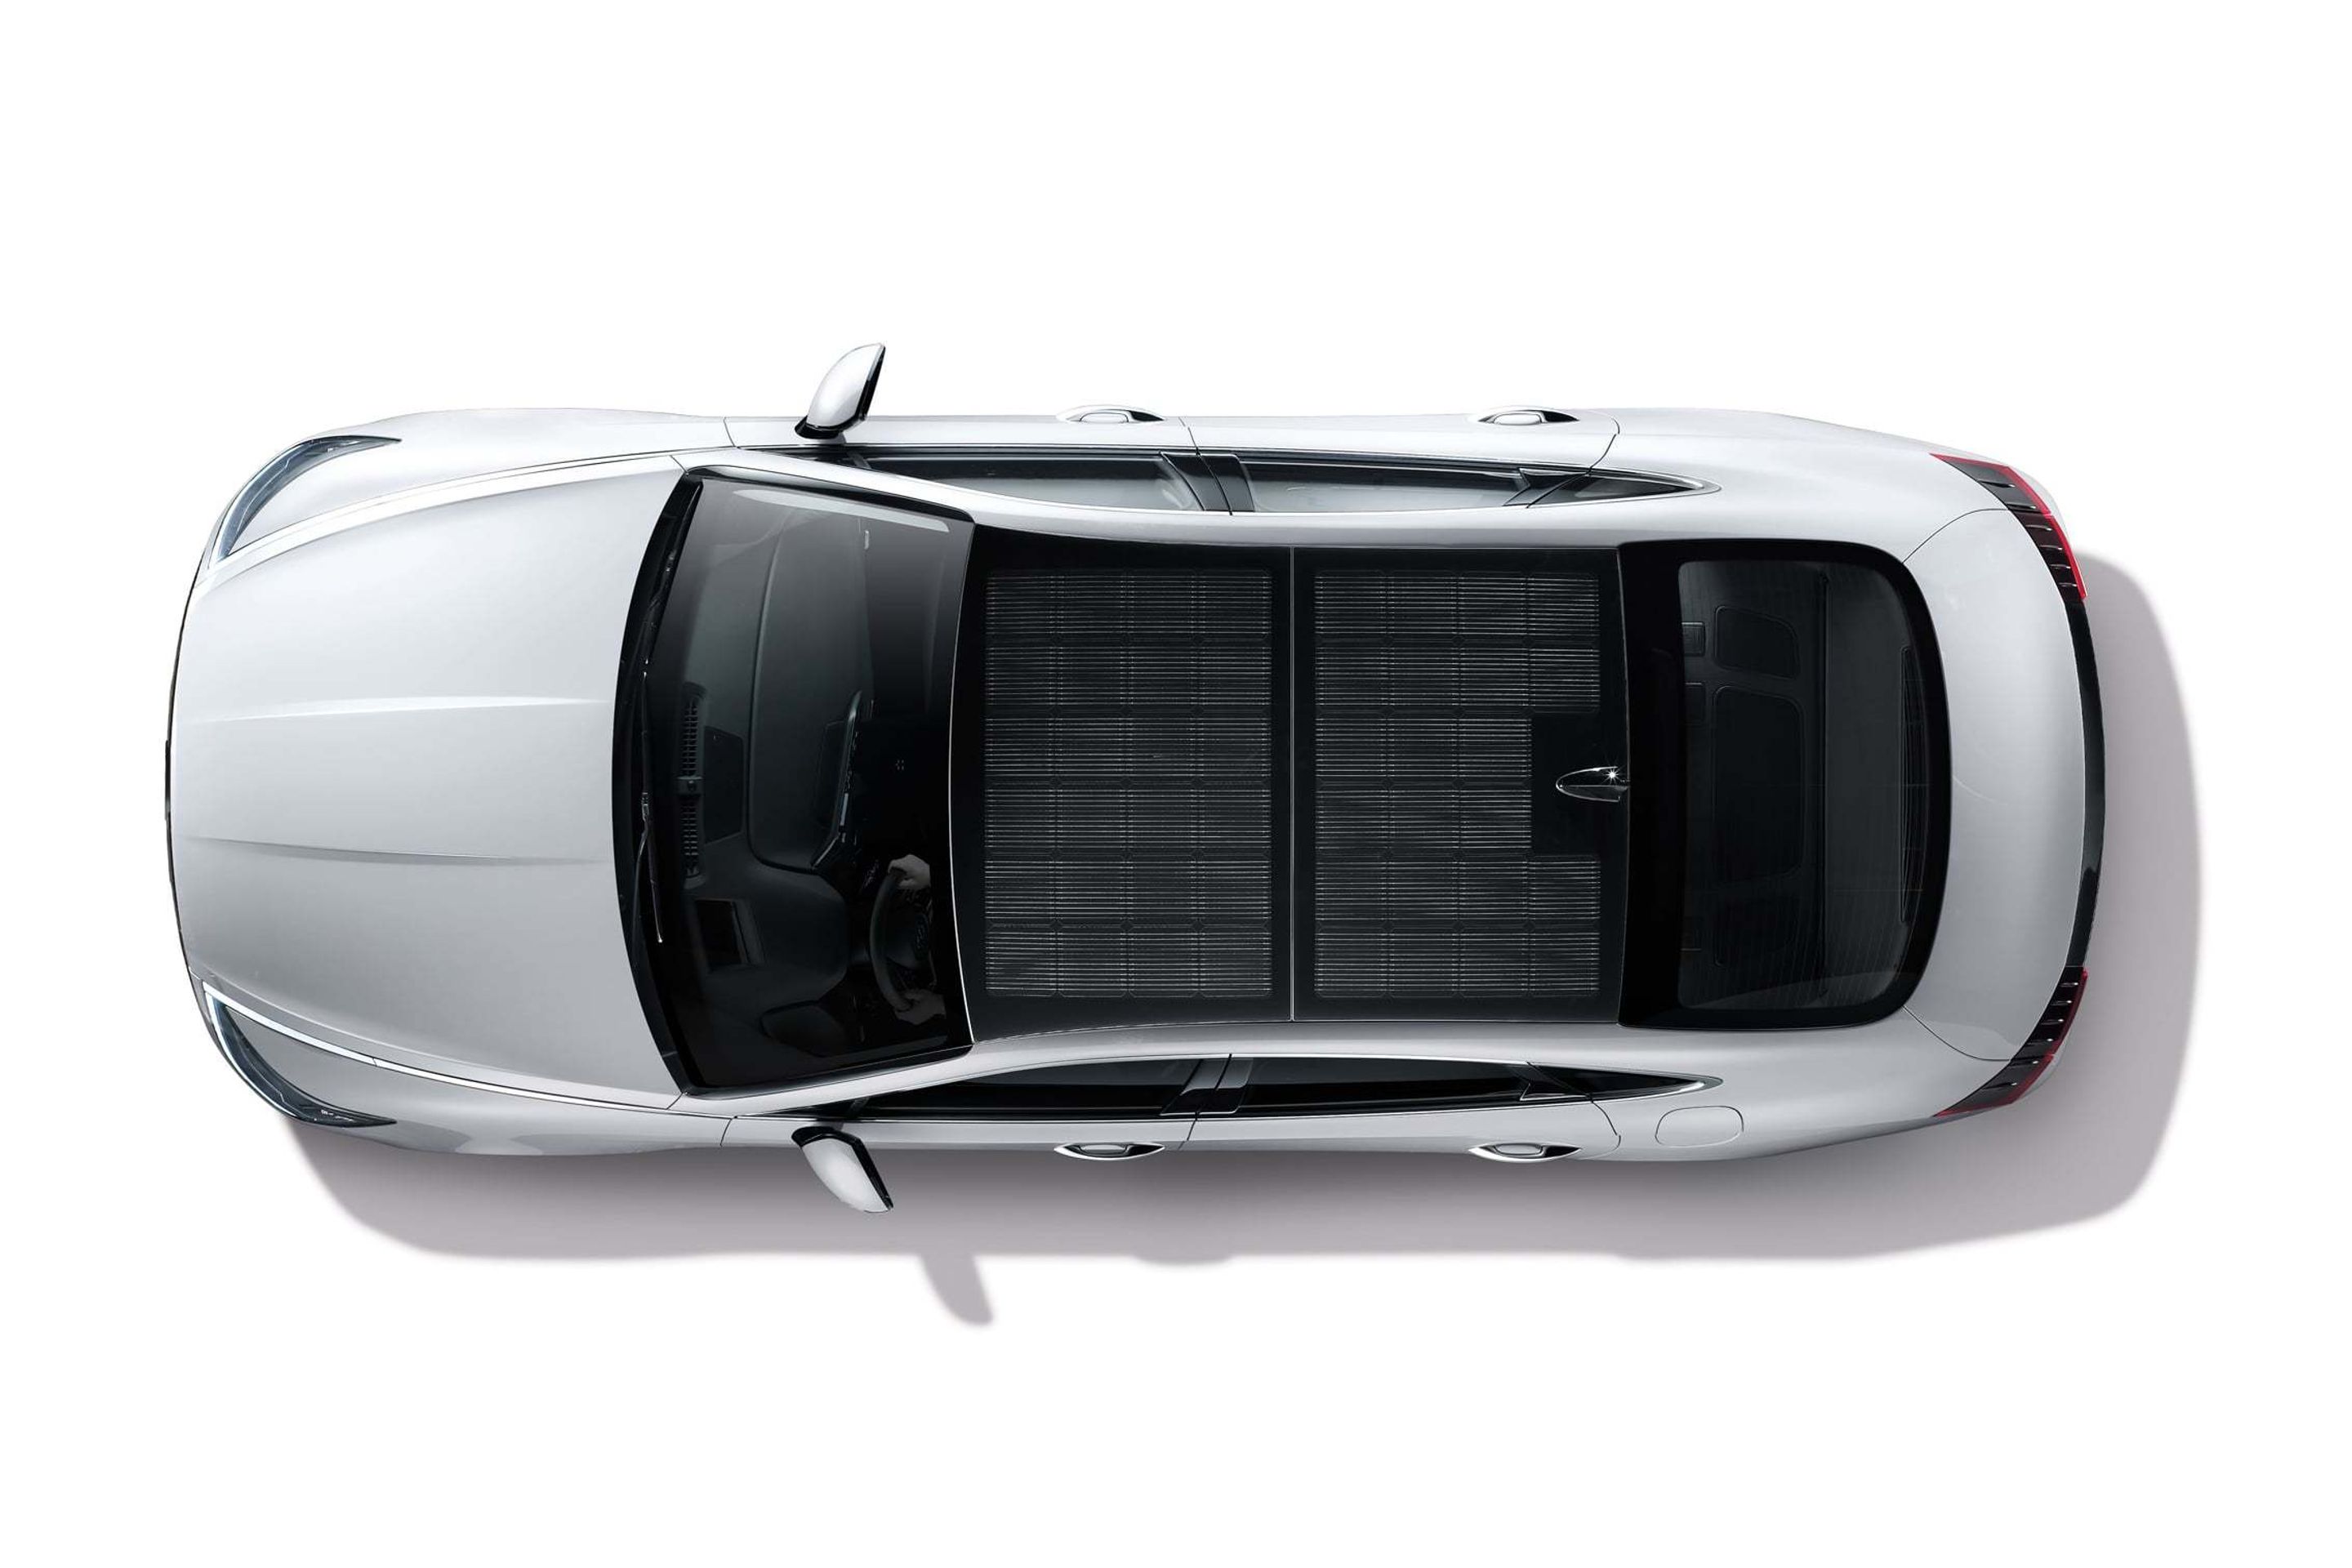 Hyundai Sonata Hybrid - 6 - Fotogalerie: Hyundai Sonata Hybrid má solární panely na střeše (3/4)